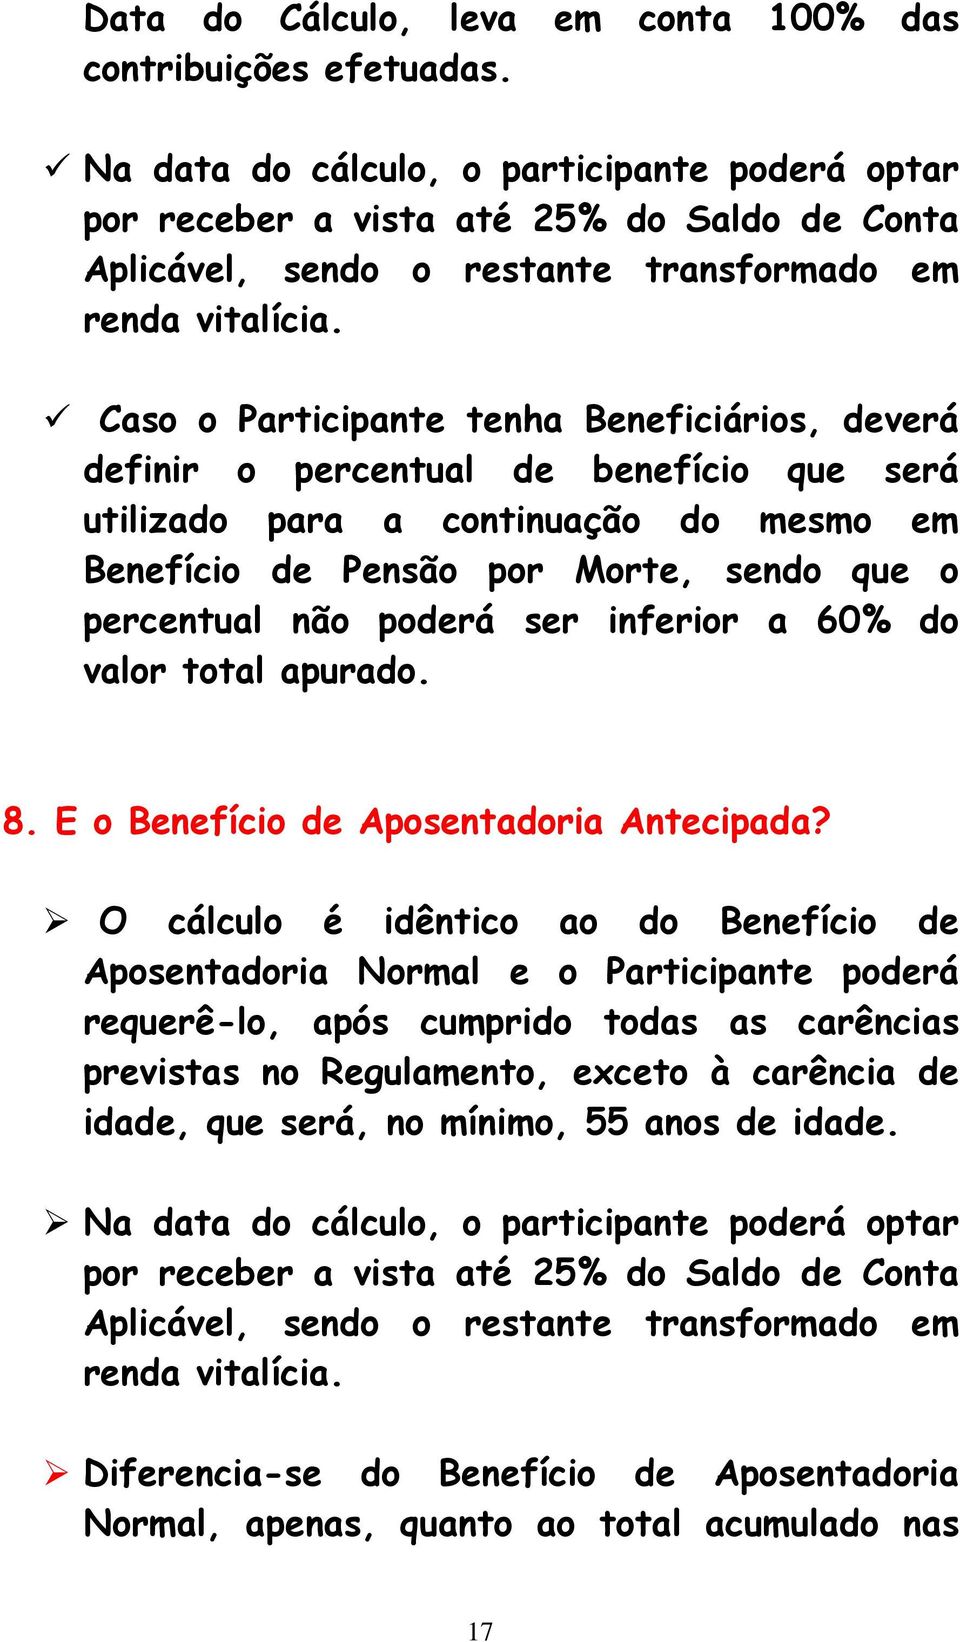 Caso o Participante tenha Beneficiários, deverá definir o percentual de benefício que será utilizado para a continuação do mesmo em Benefício de Pensão por Morte, sendo que o percentual não poderá